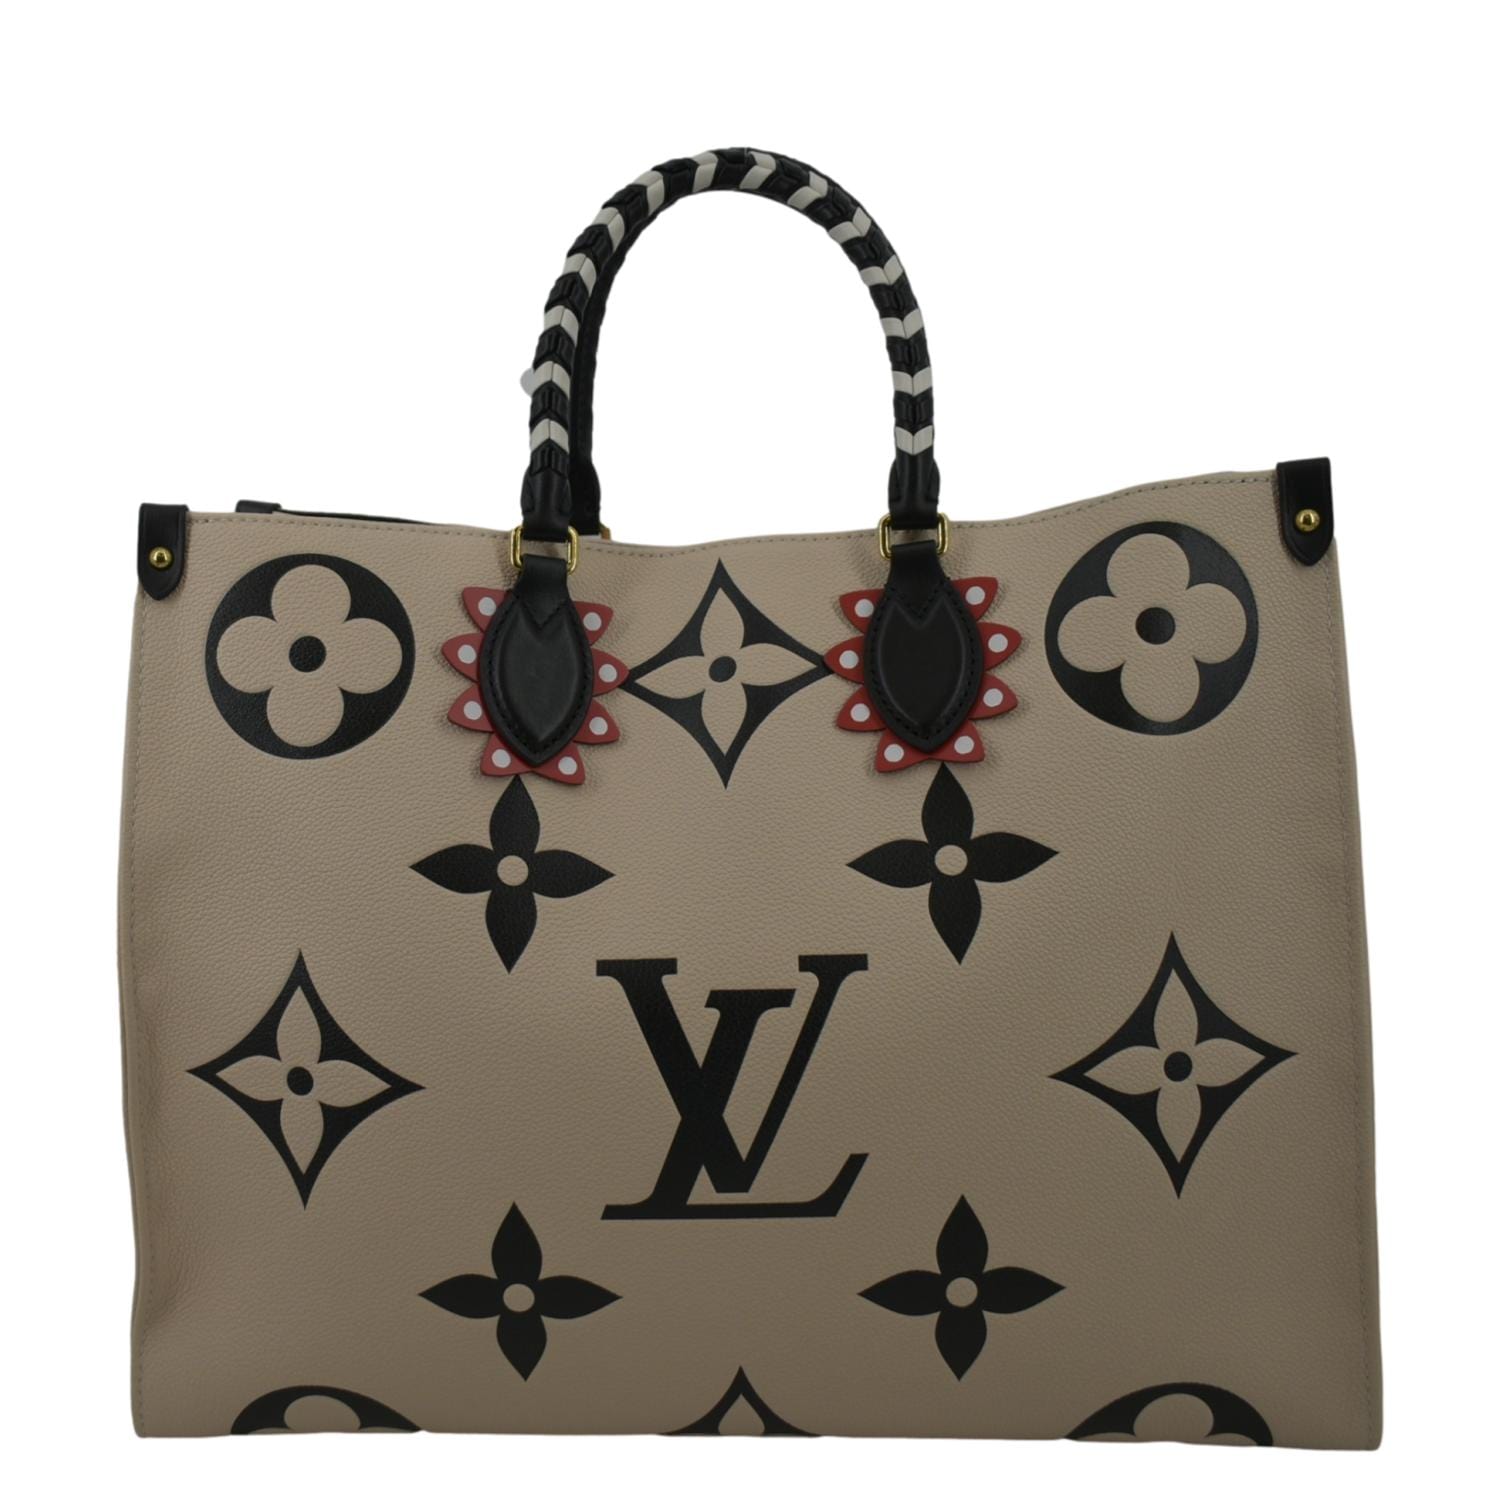 Louis Vuitton Black Monogram Giant Empreinte Leather OnTheGo GM Tote Bag